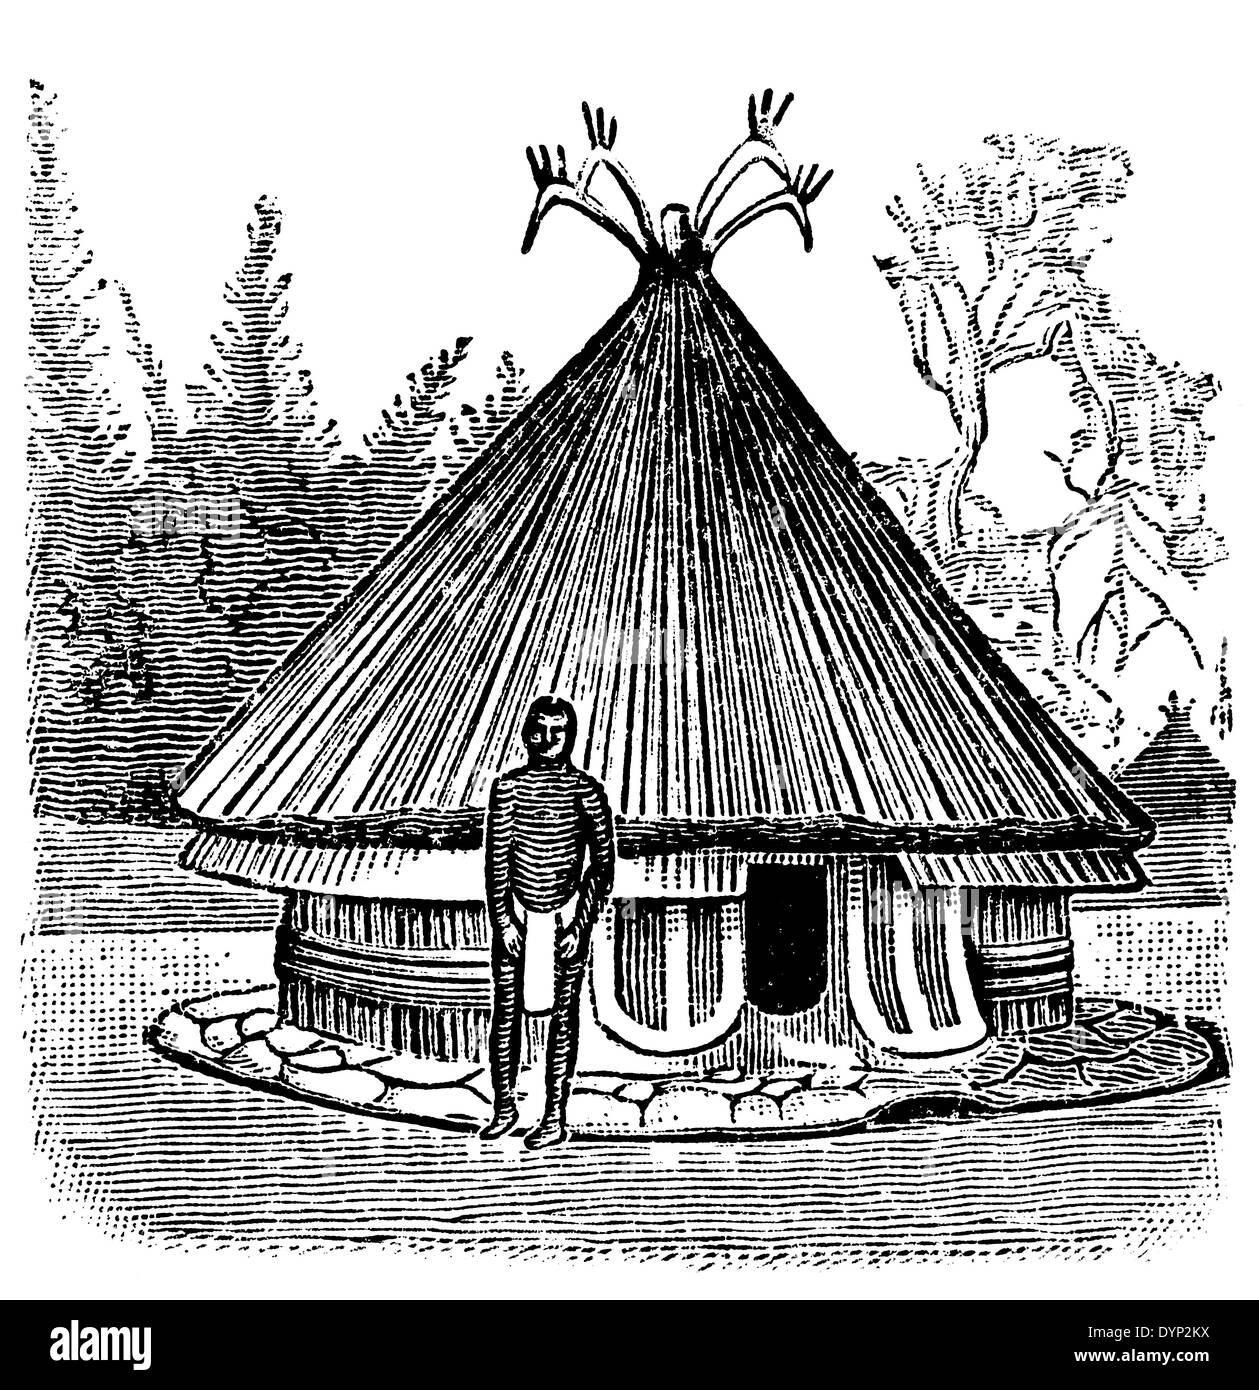 Maison rurale traditionnelle de l'Afrique centrale, de l'illustration de l'Encyclopédie Soviétique, 1926 Banque D'Images